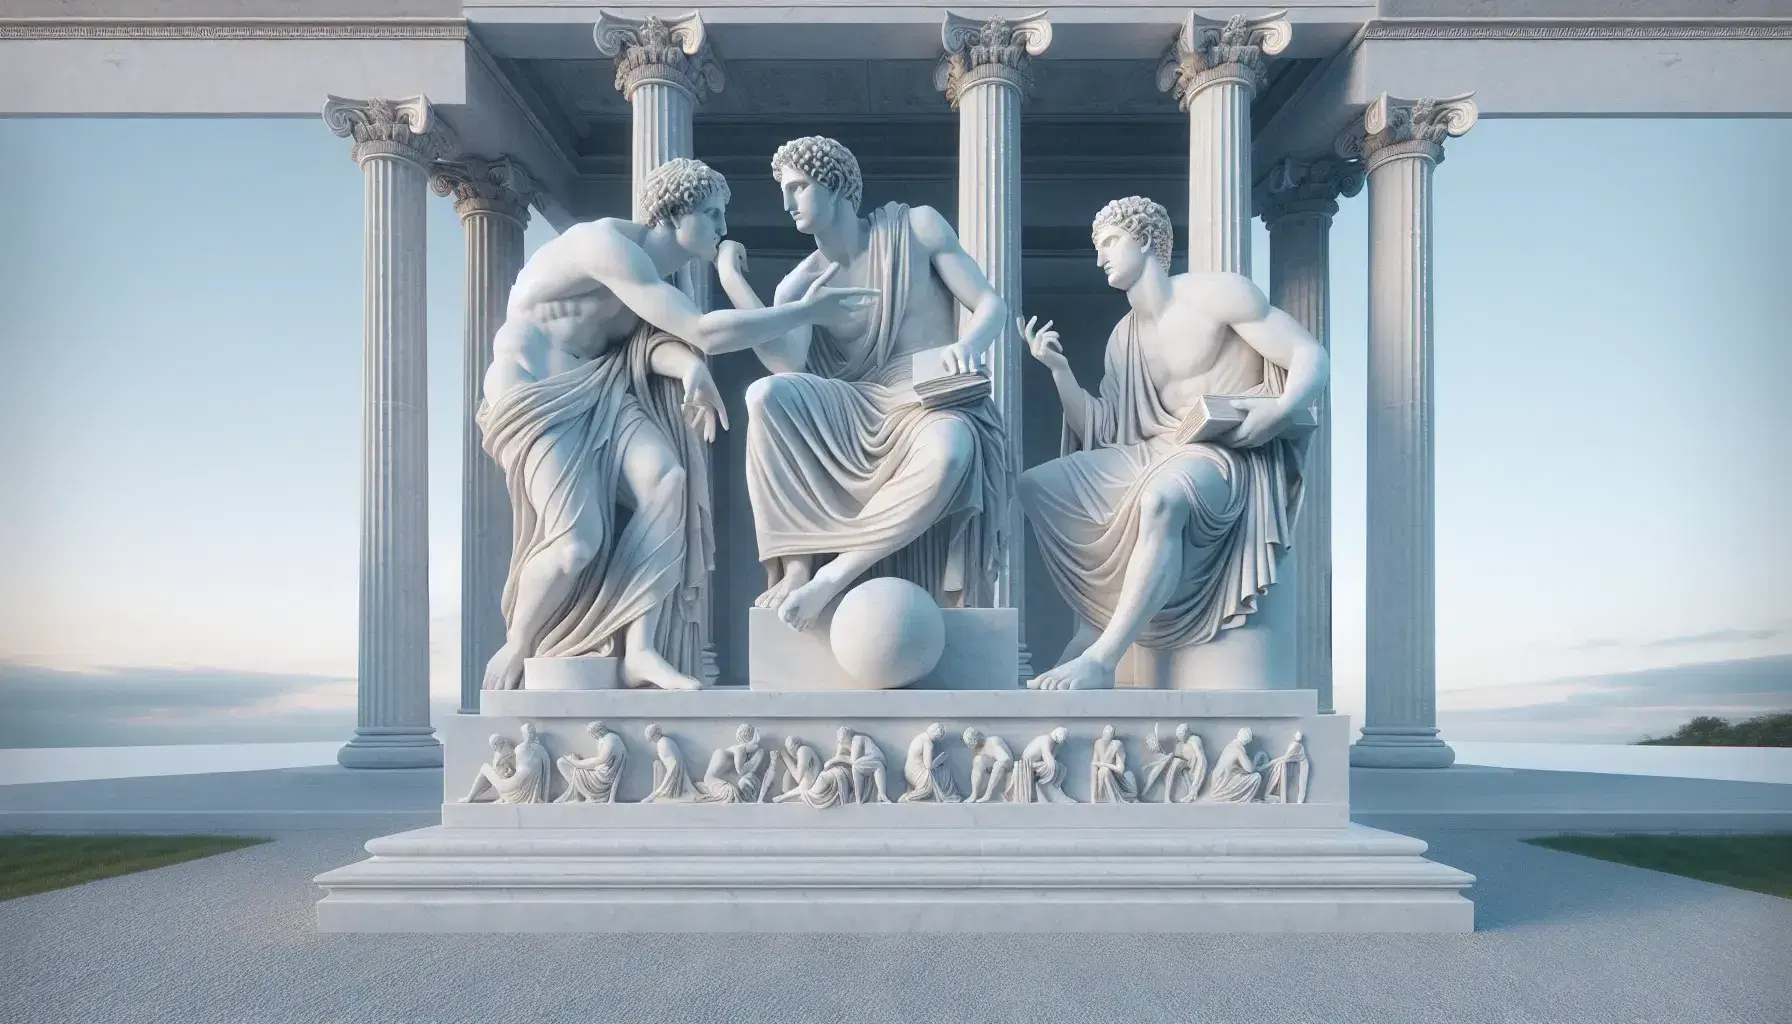 Escultura de mármol blanco con tres figuras humanas entrelazadas en debate, ante un templo clásico y cielo azul, con detalles de luz y sombra.